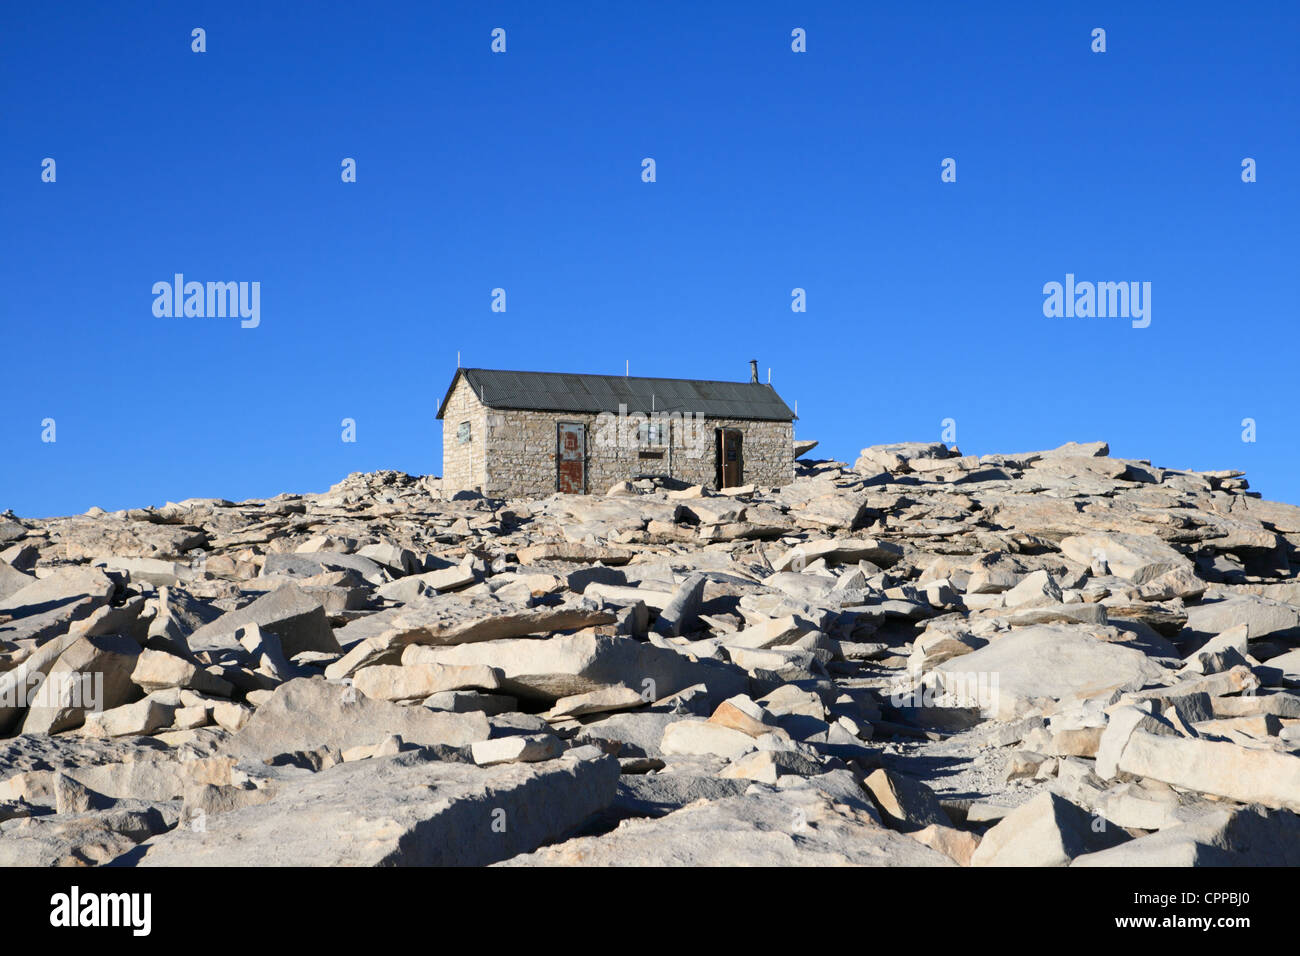 Mount Whitney summit hut at 14505 feet on the summit of Mount Whitney in California Stock Photo